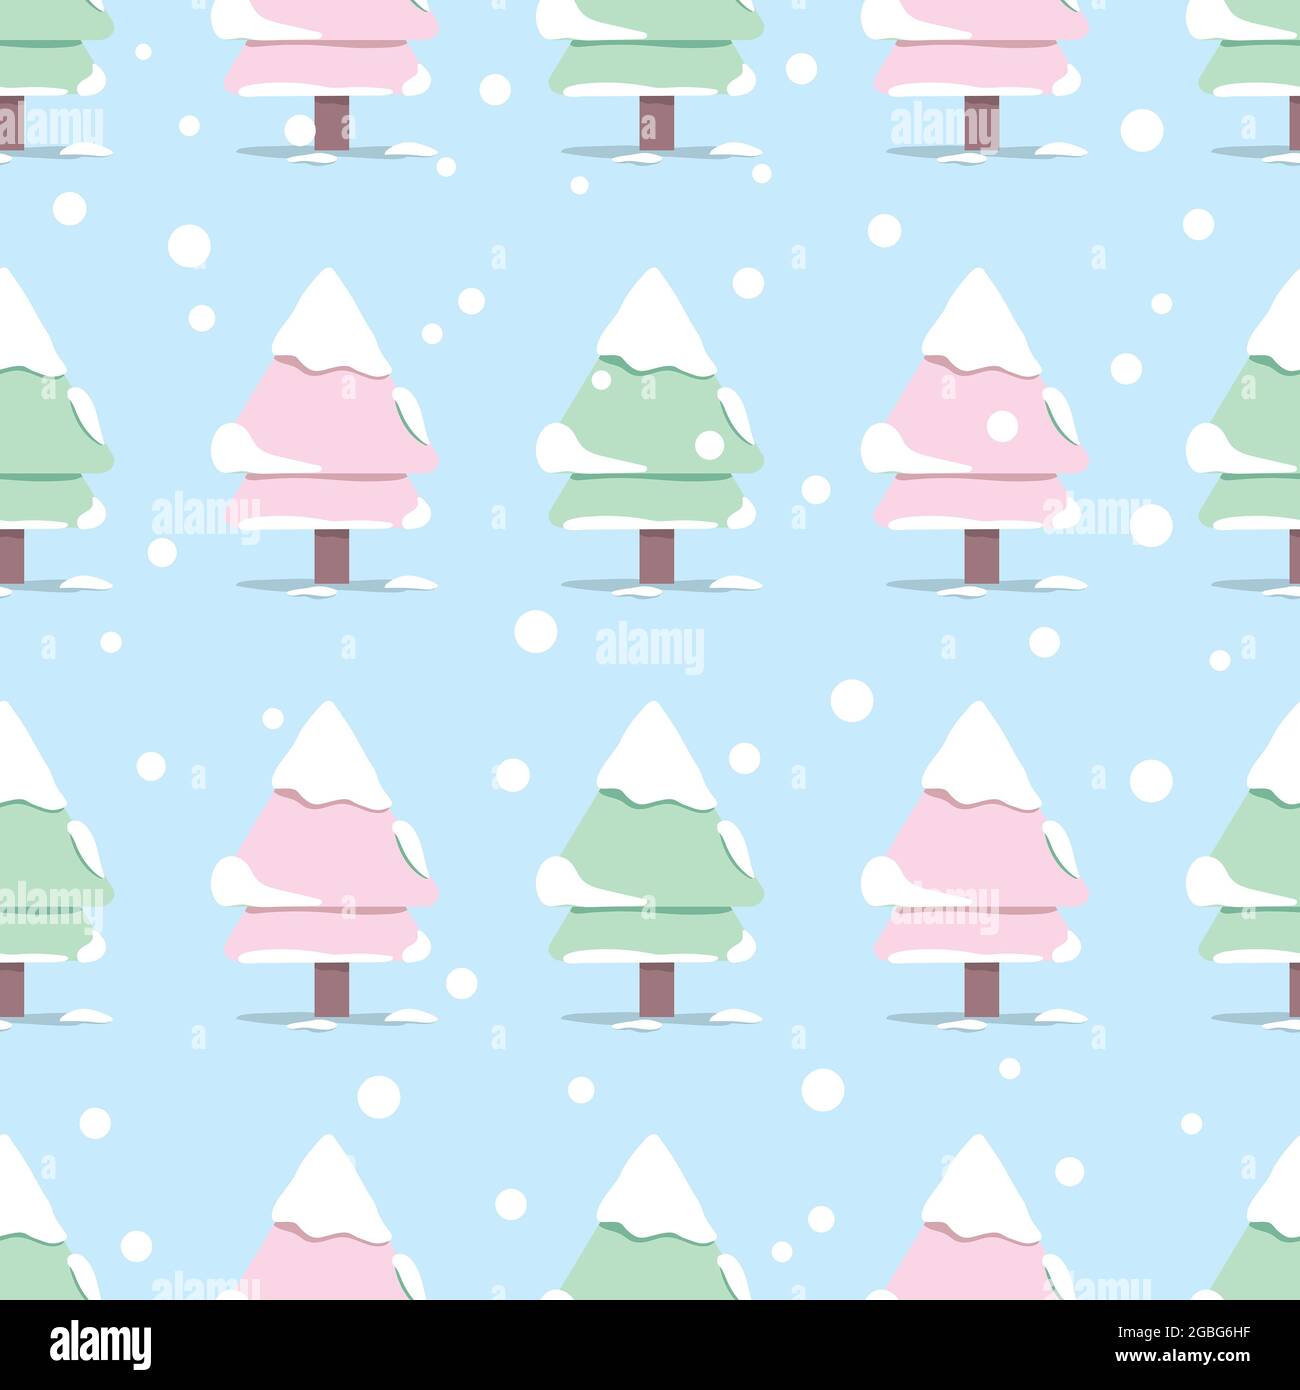 Pastel Christmas seamless pattern, winter seamless pattern